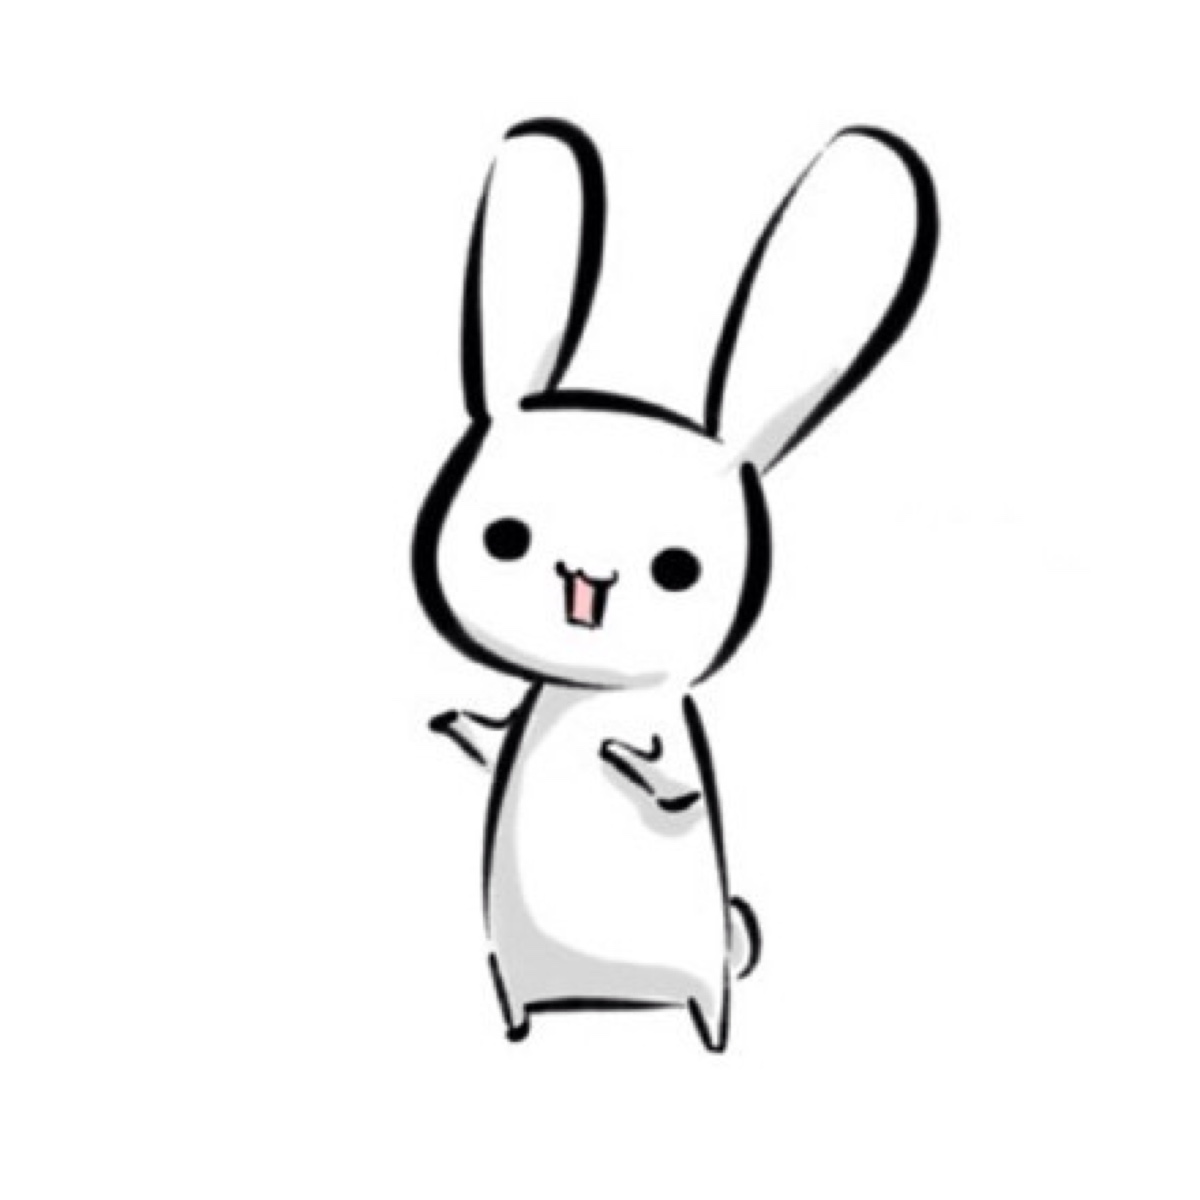 小兔子头像动漫图片大全可爱图片未收录 小兔子图片大全可爱